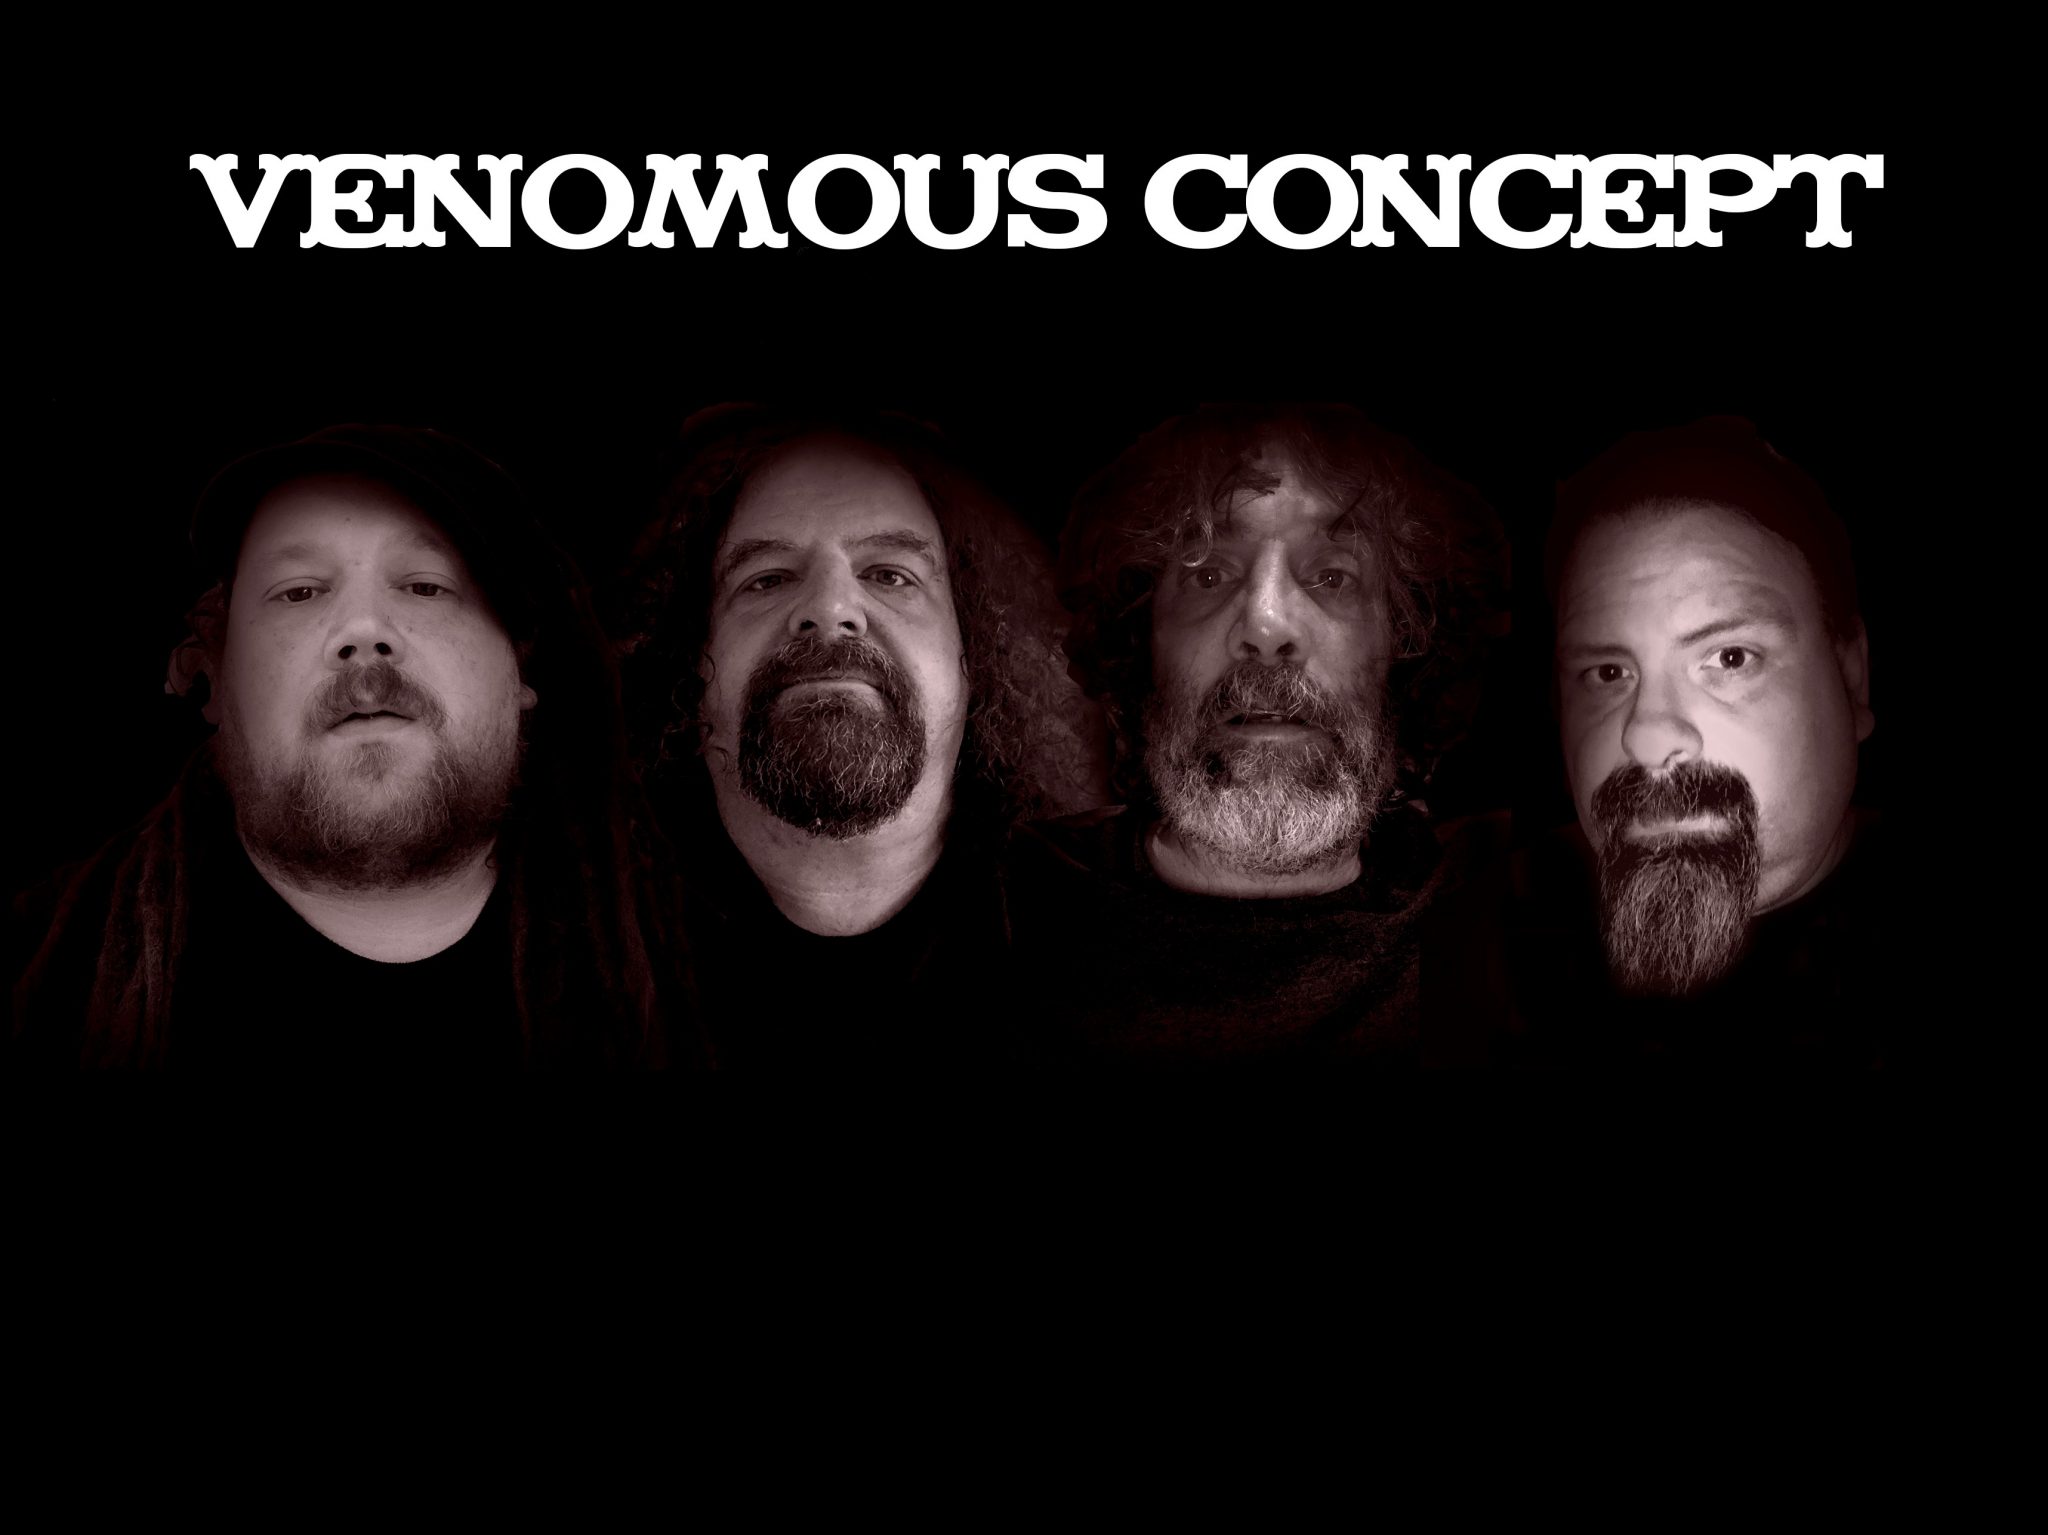 venomous concept tour